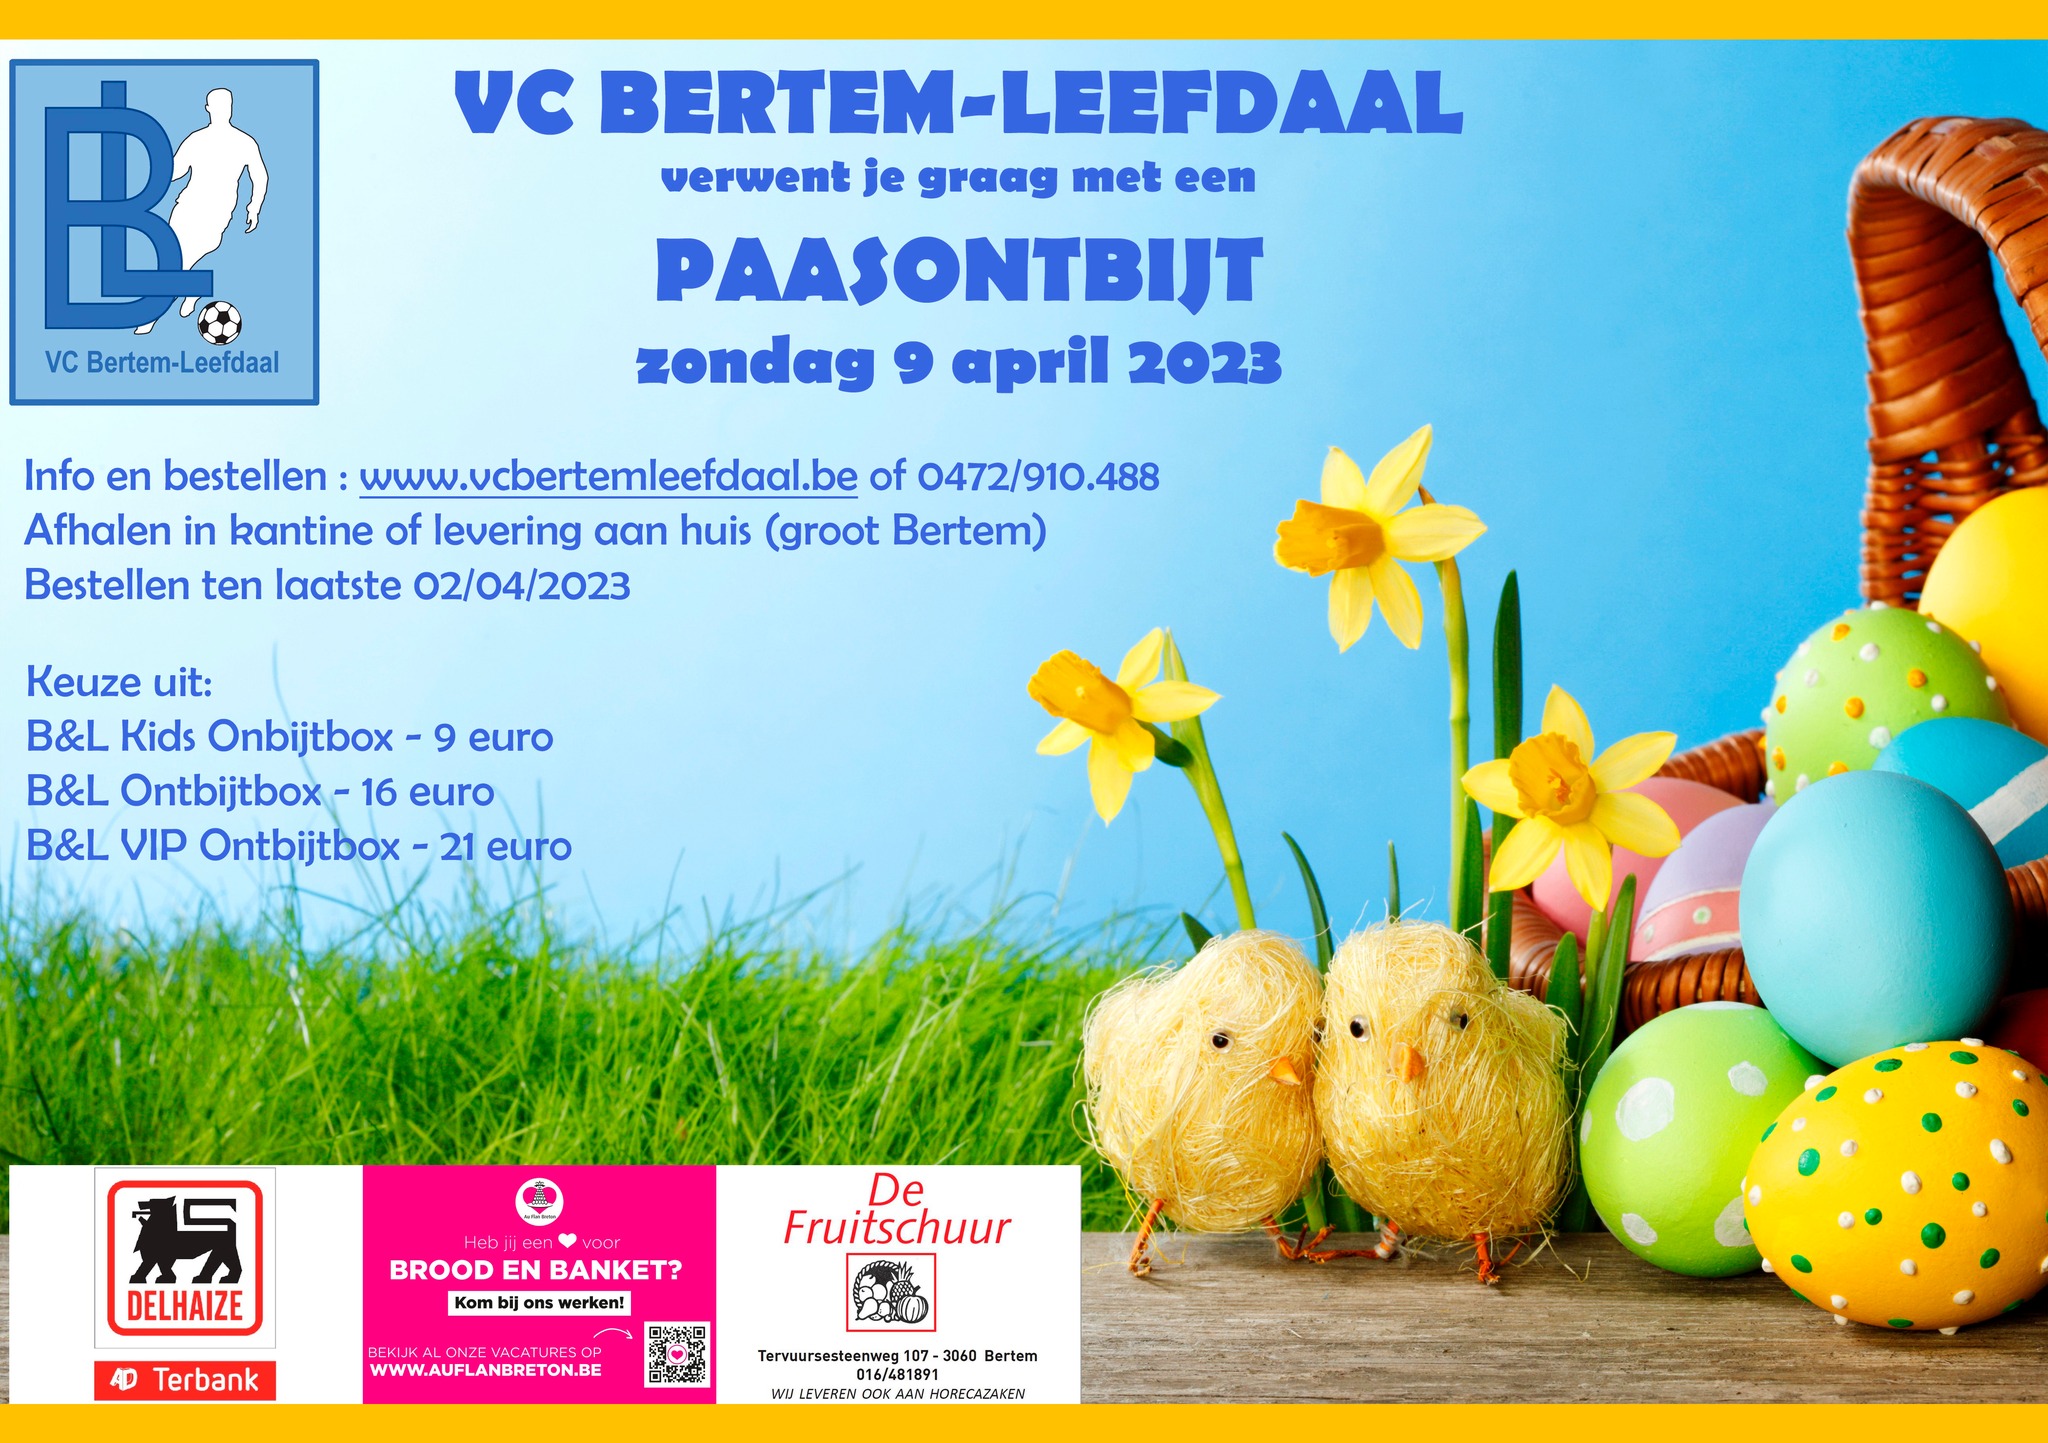 Maak Paaszondag perfect met een VC Bertem-Leefdaal Ontbijtbox!